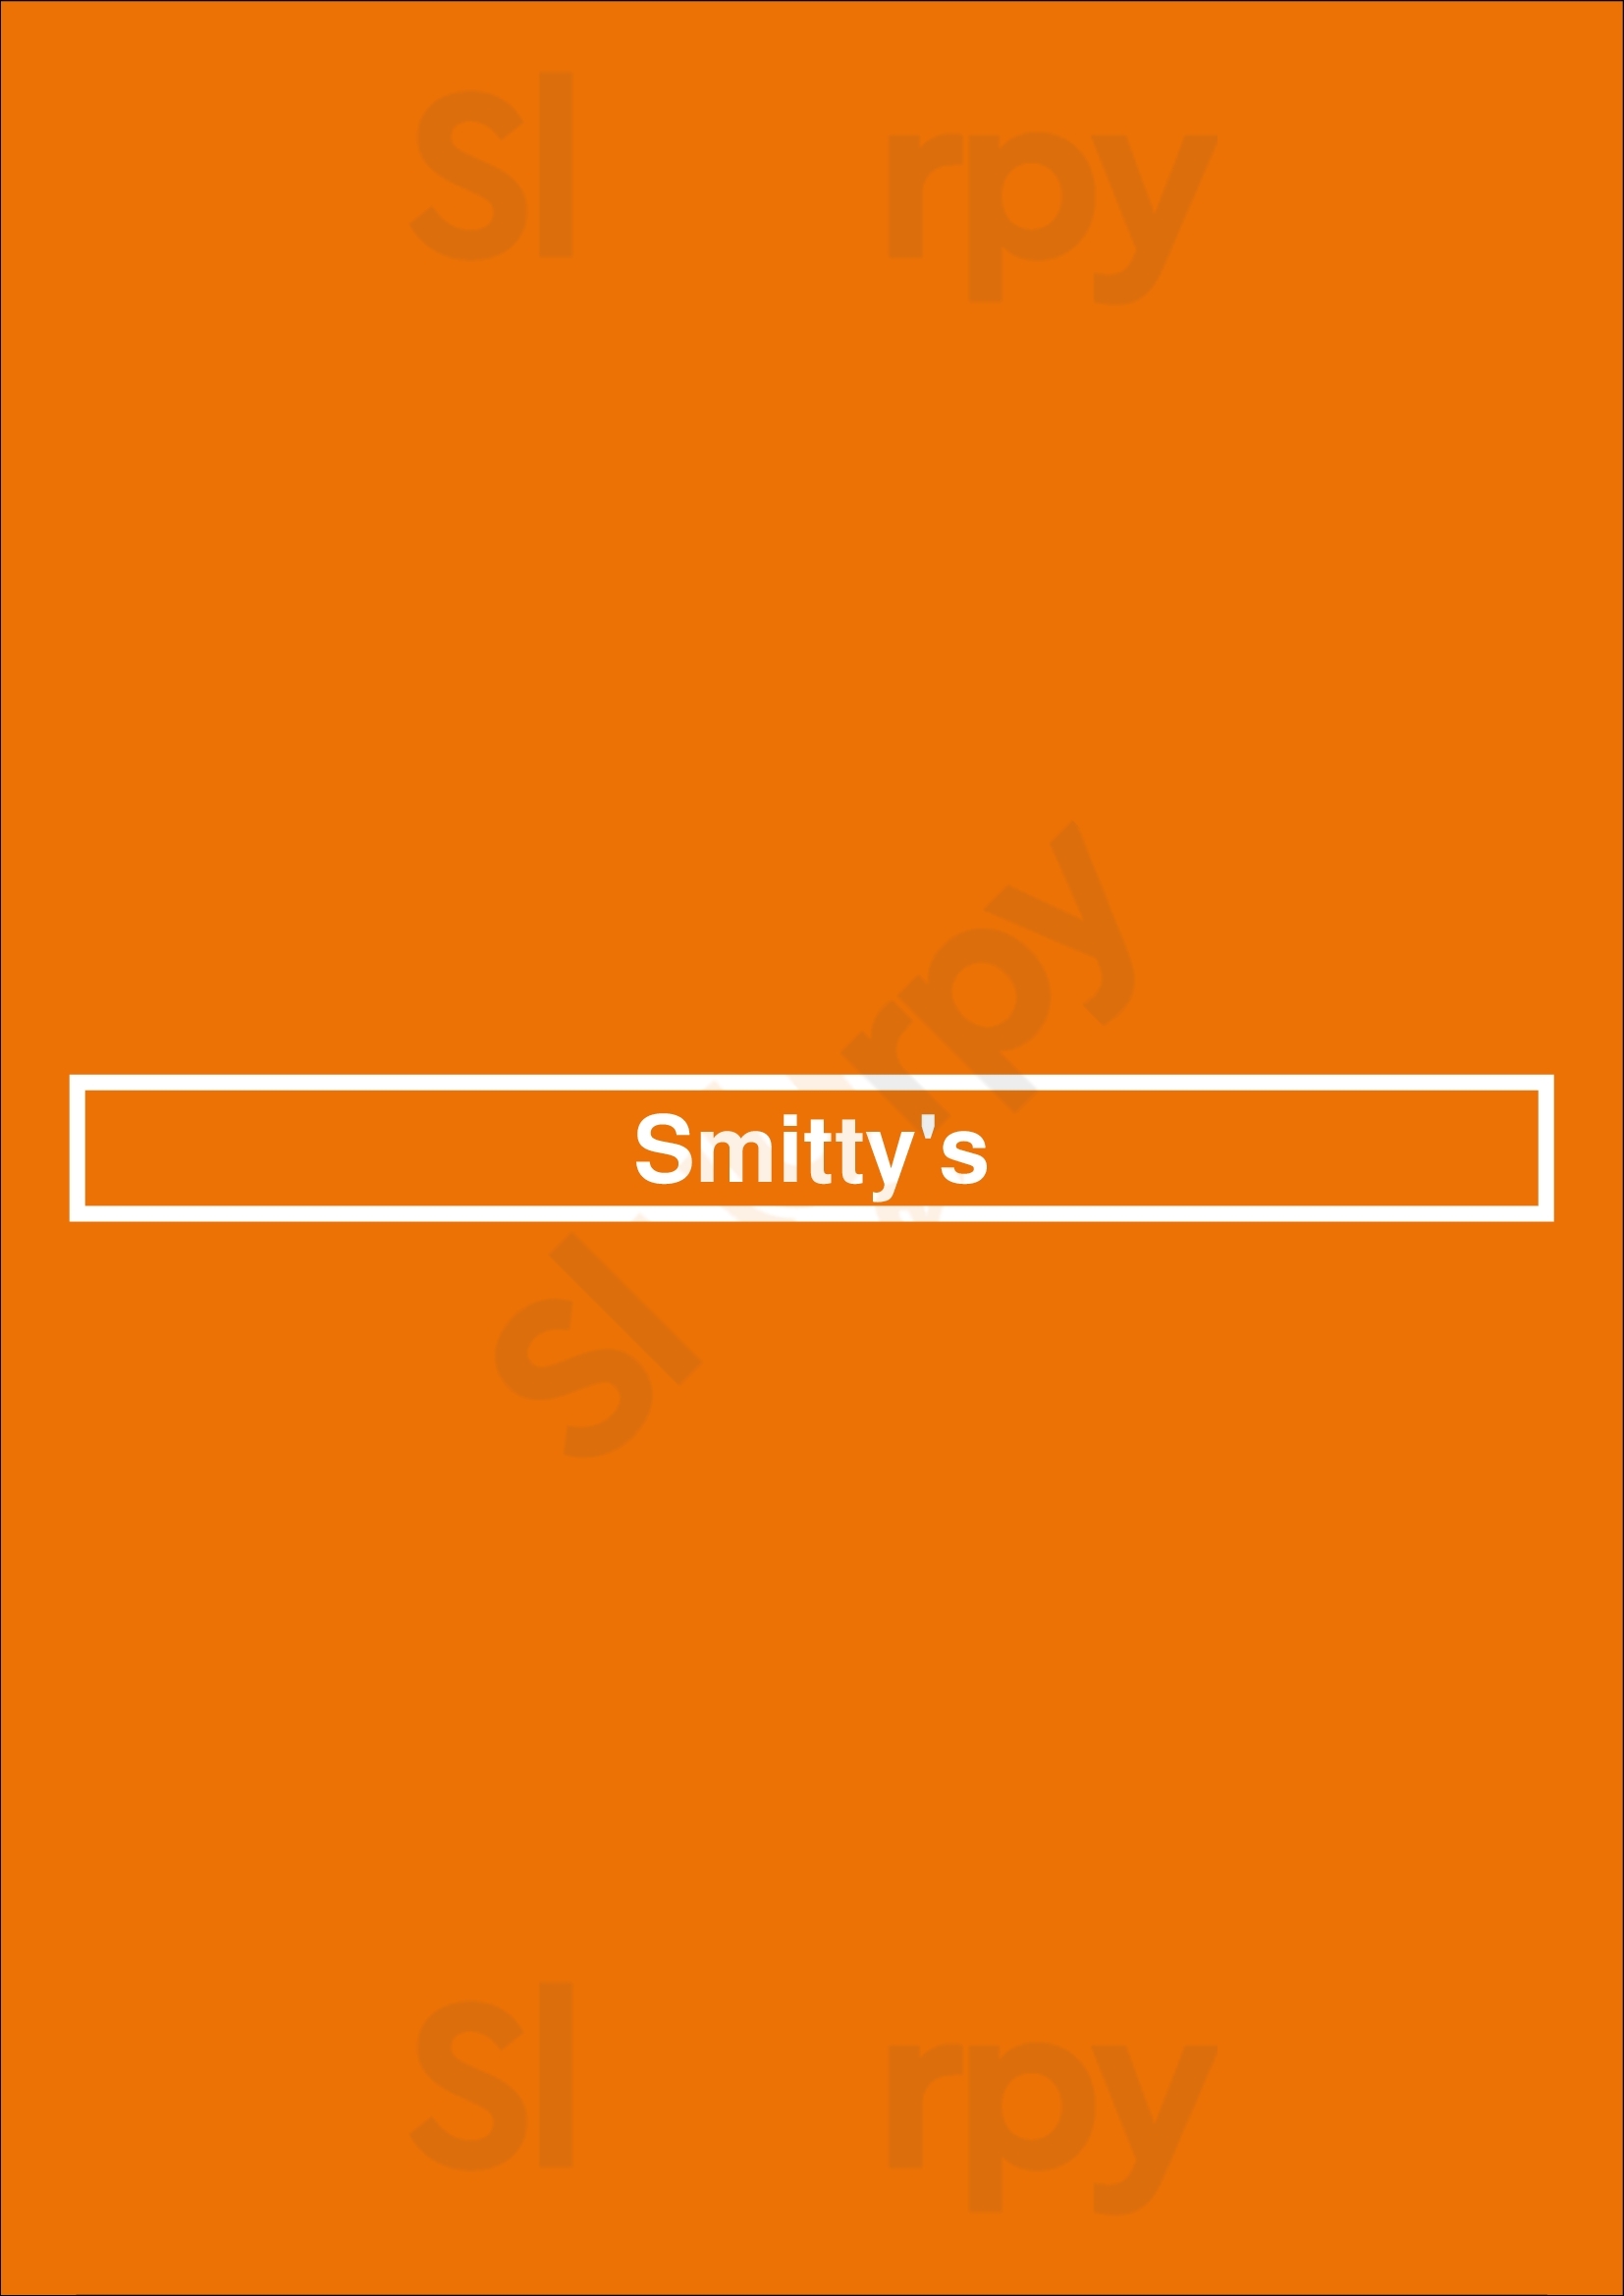 Smitty's Calgary Menu - 1